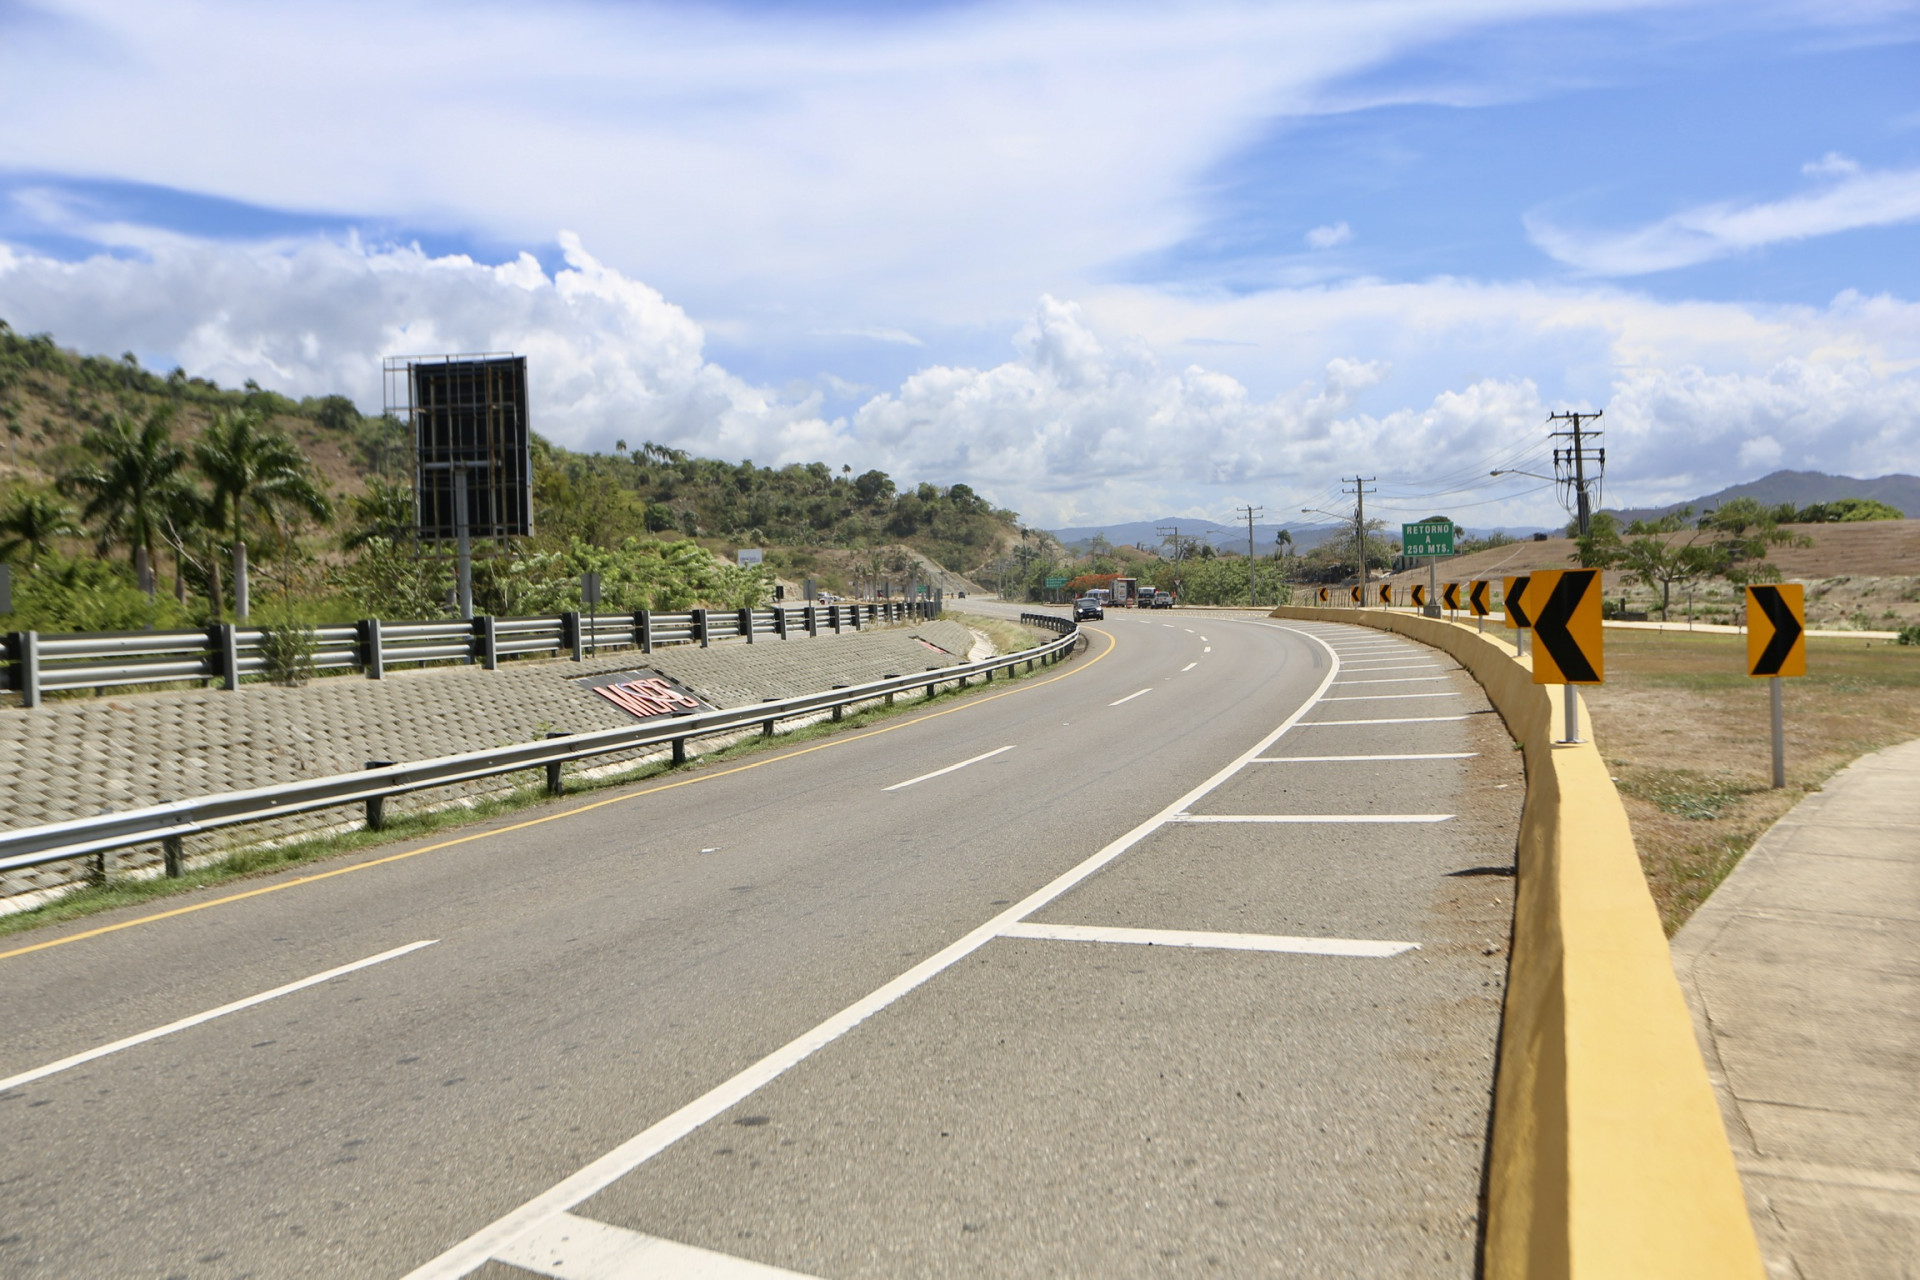 REPÚBLICA DOMINICANA: Presidente Danilo Medina entrega carretera Navarrete-Puerto Plata y otras seis obras viales